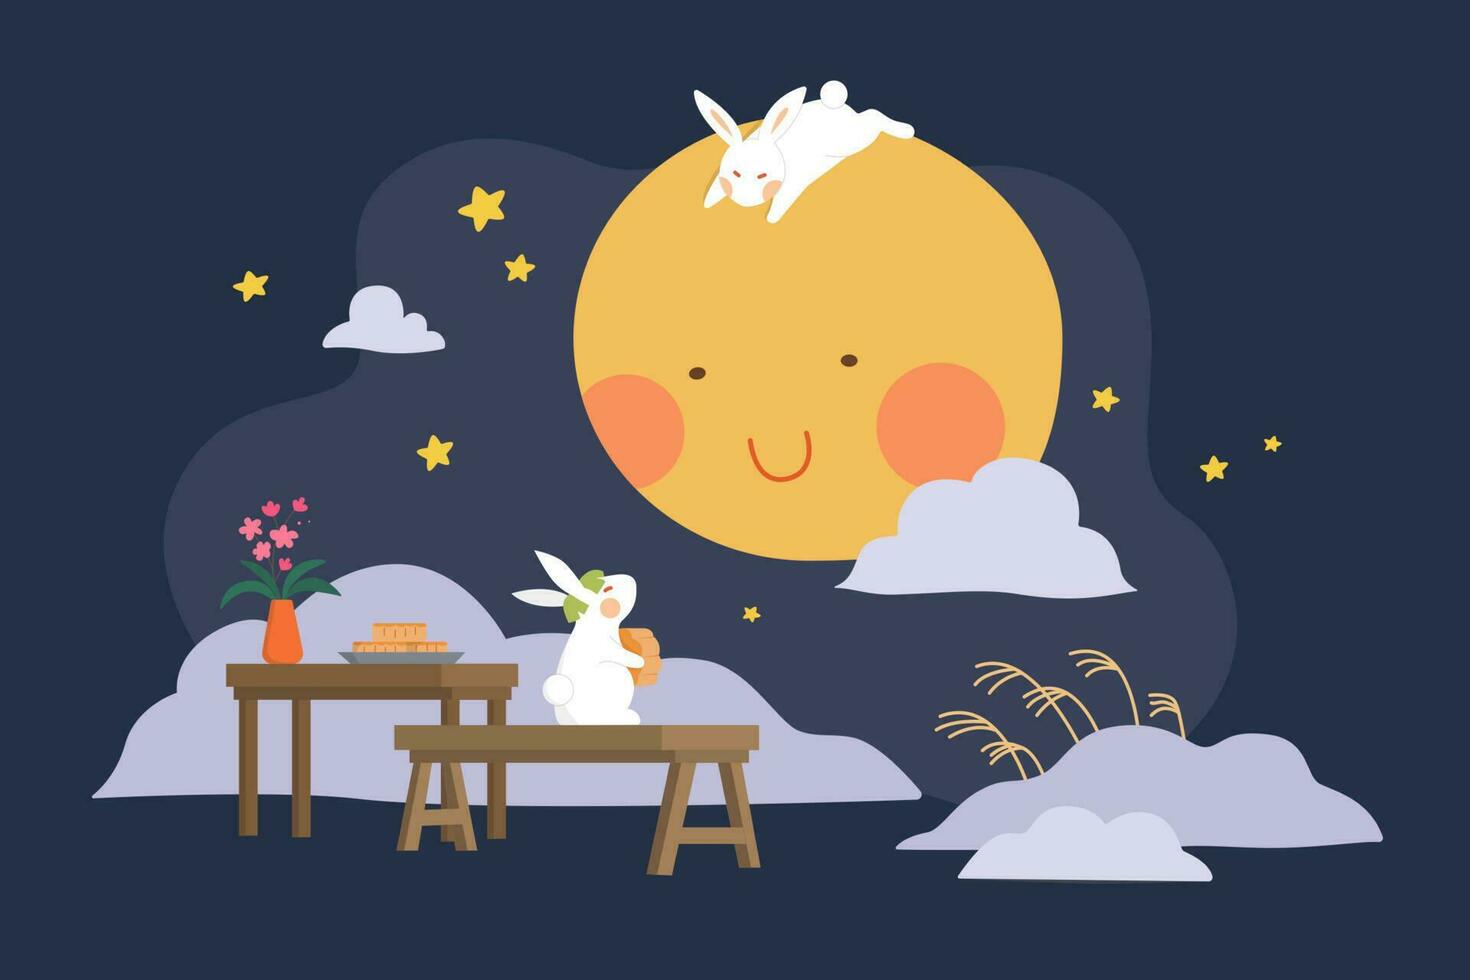 mitten höst festival design. platt illustration av jade kaniner äter månkakor och tittar på måne som Semester fester vektor